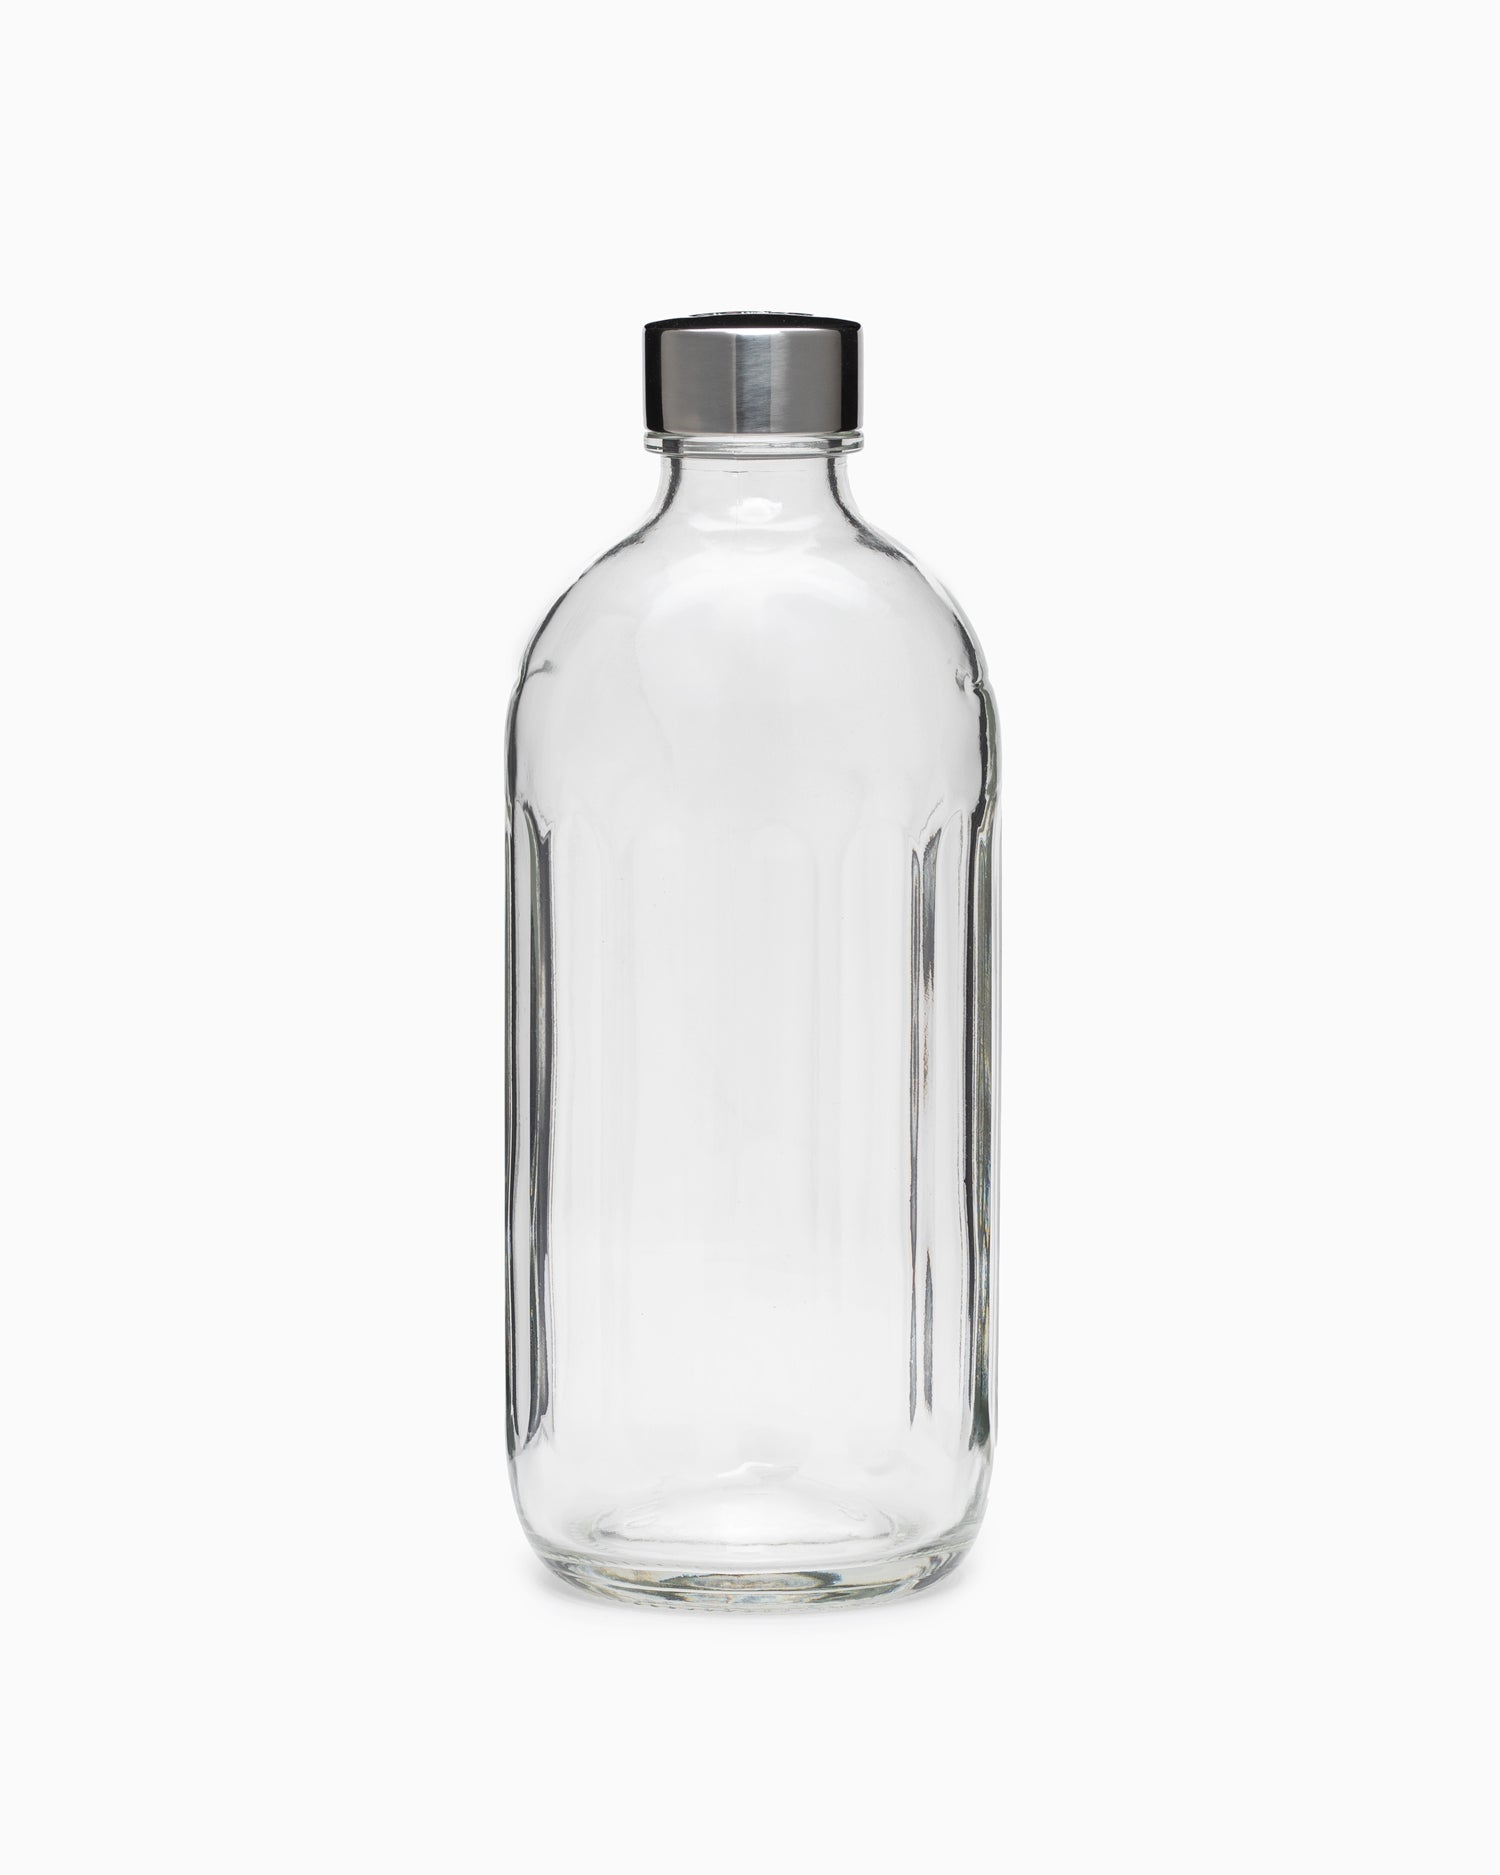 Aarke Glass Bottle - Stainless Steel